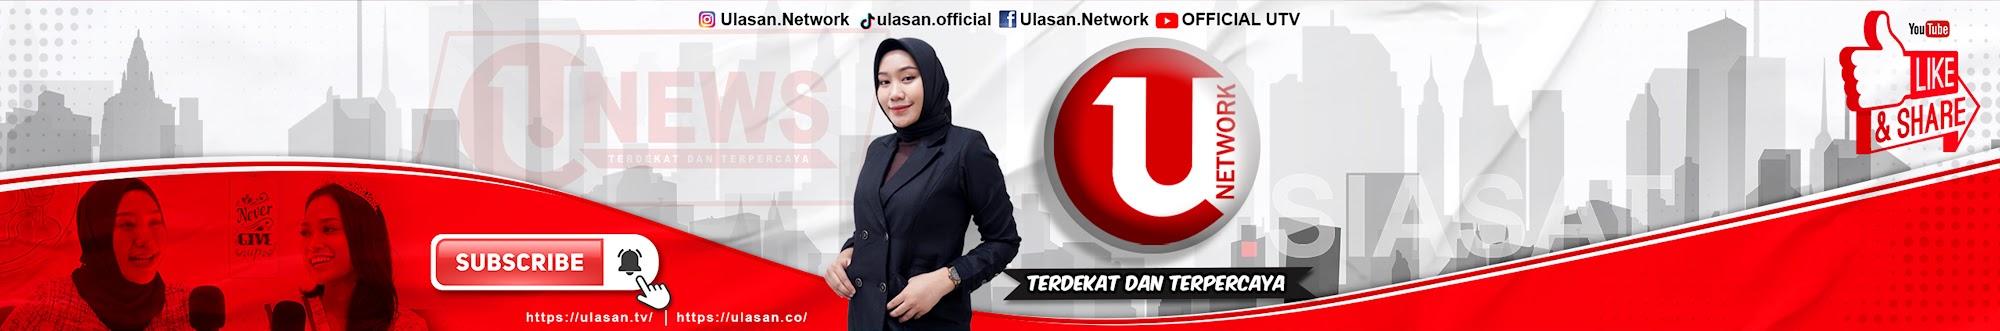 Official UTV